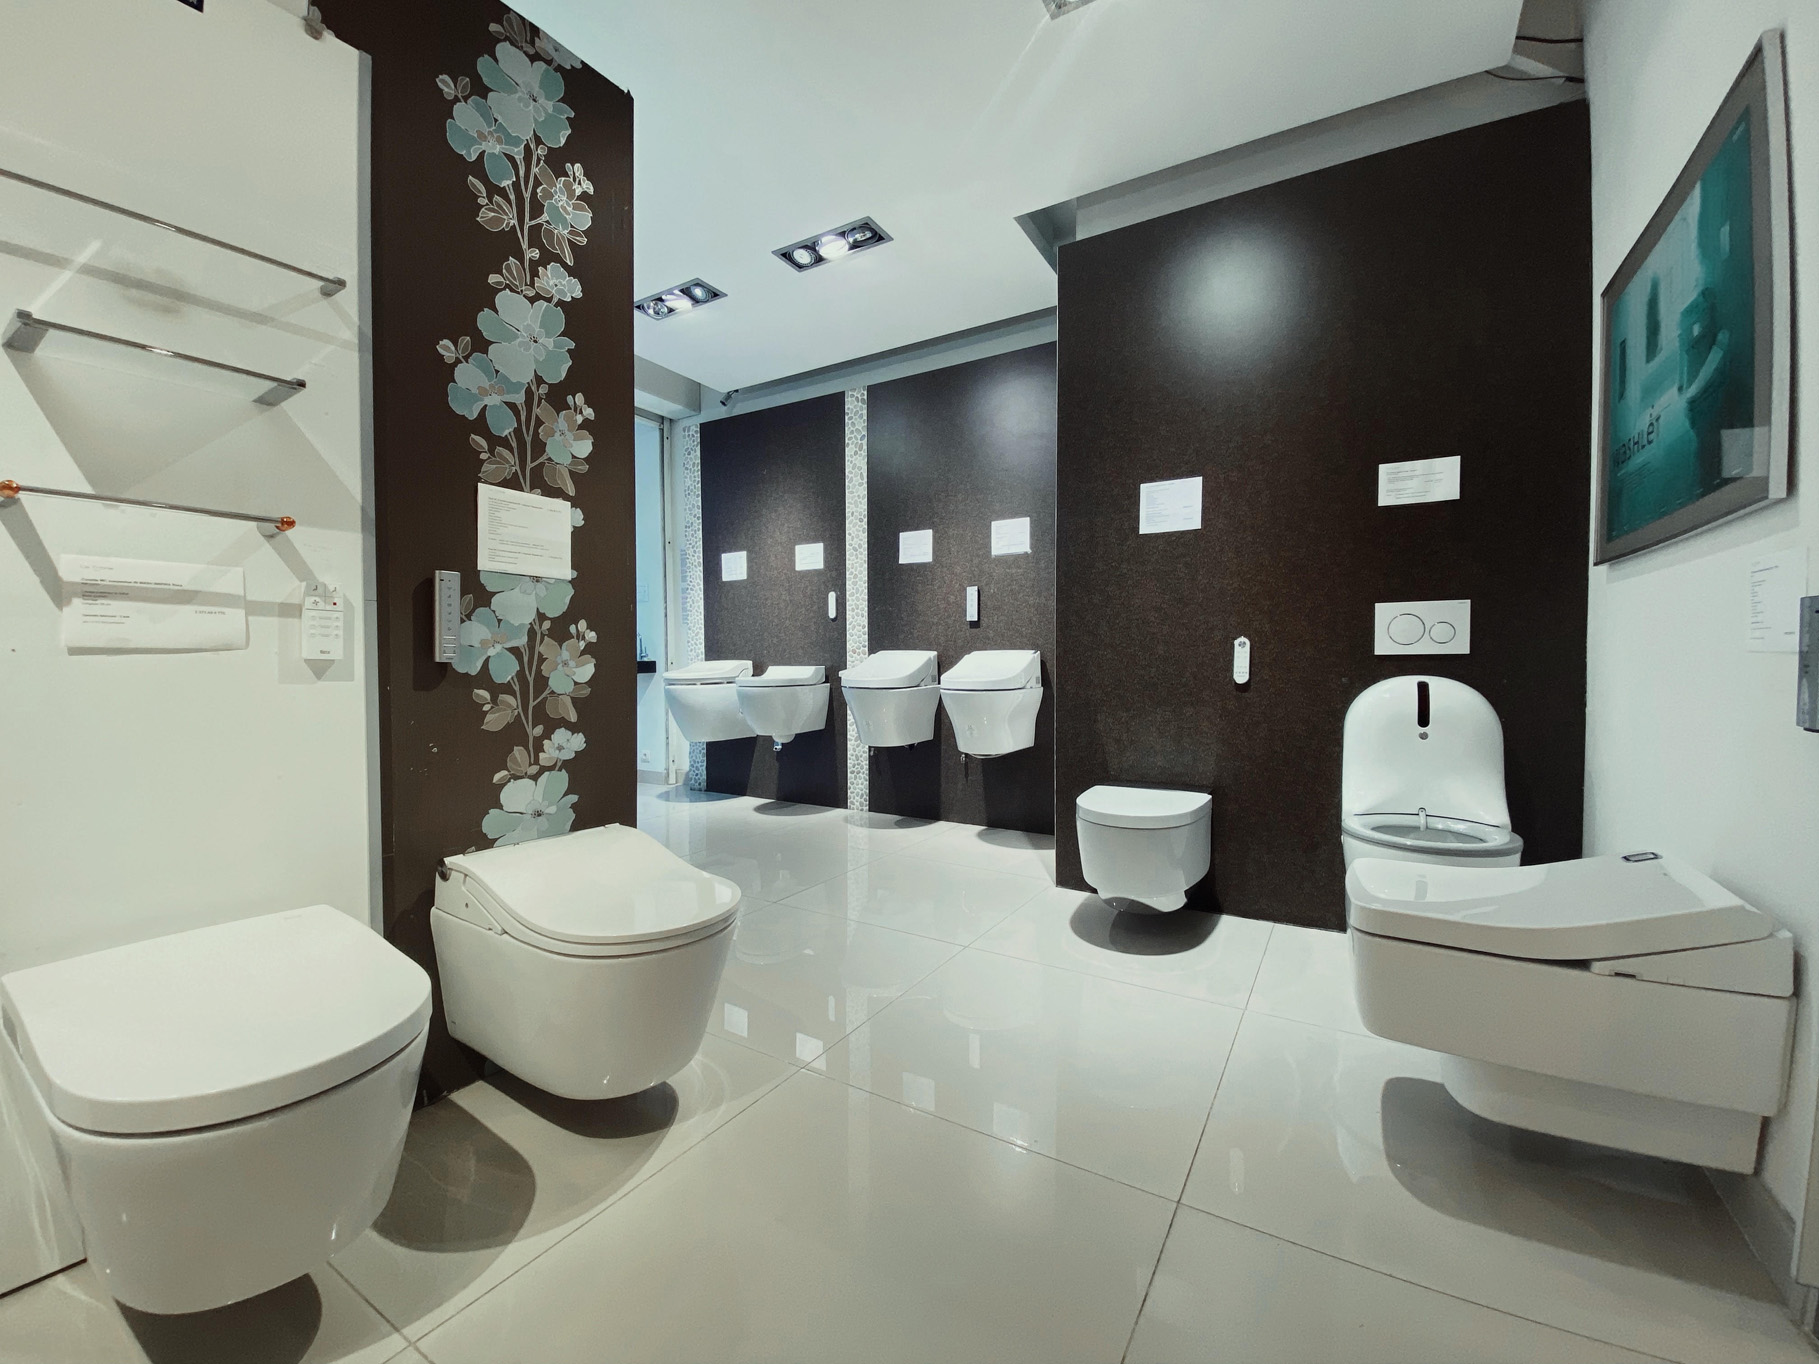 Les wc japonais : des toilettes truffées de technologies ! - Cleanstore